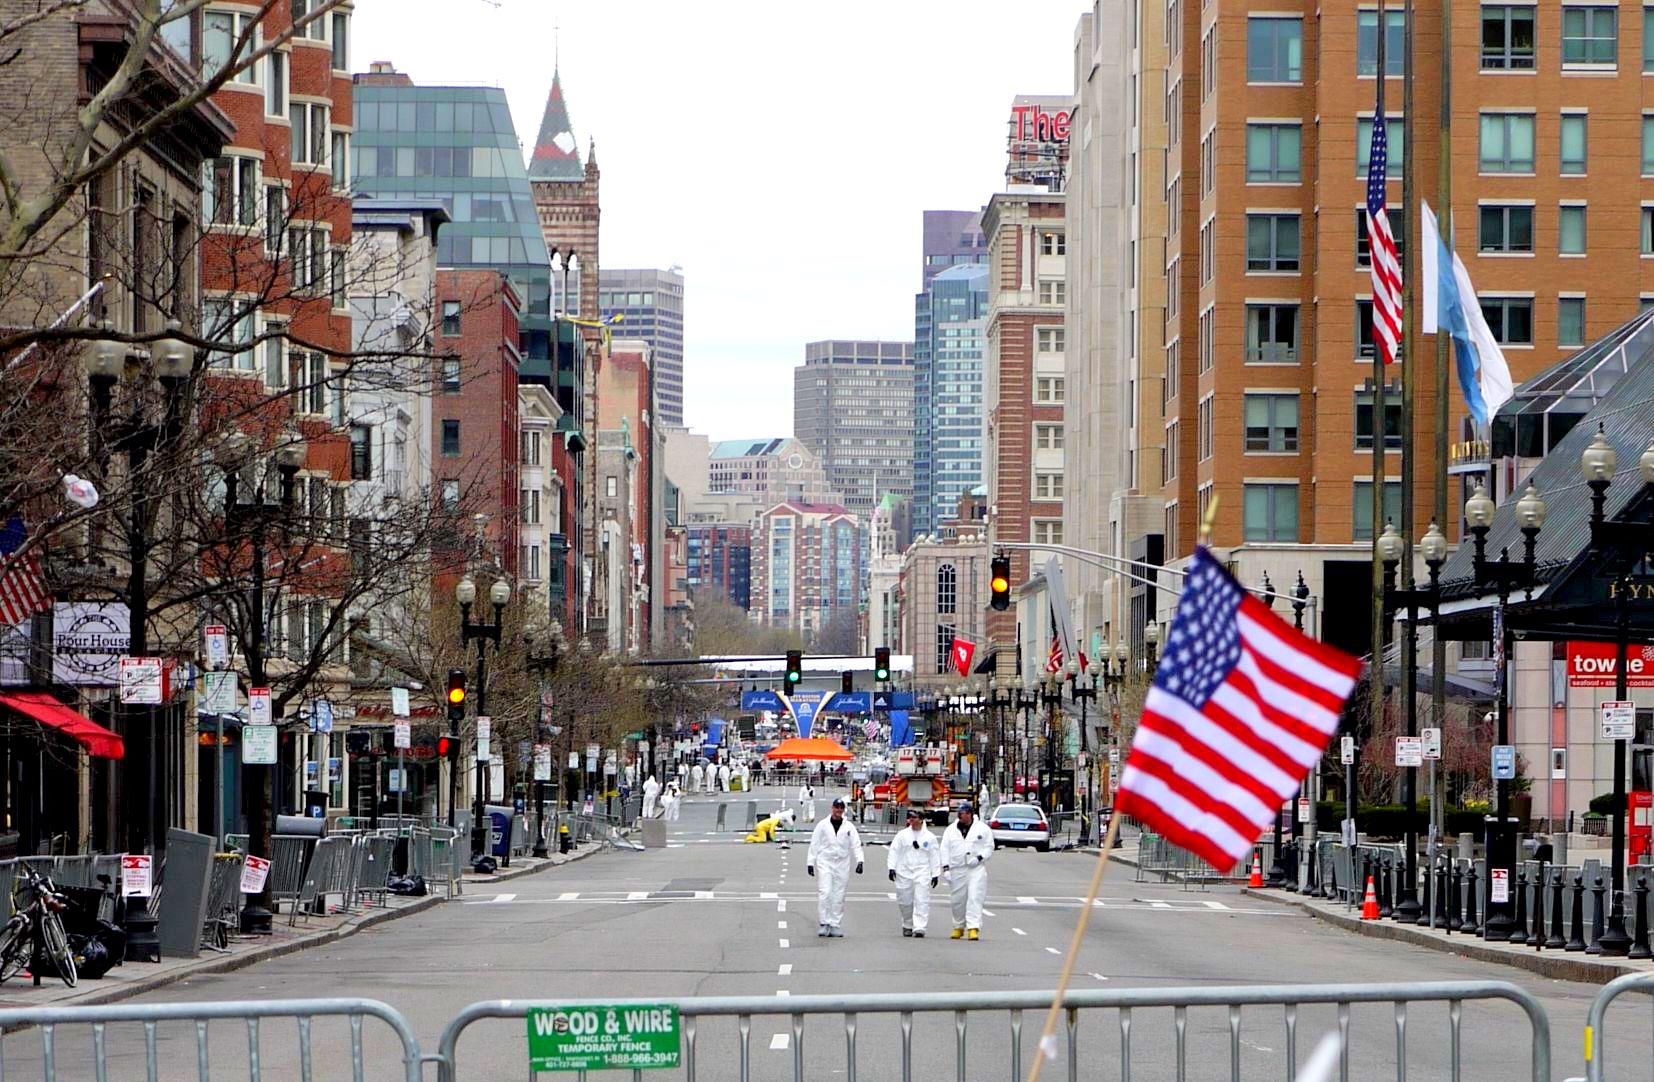    Boston Marathon 2013 |  Searching for clues  